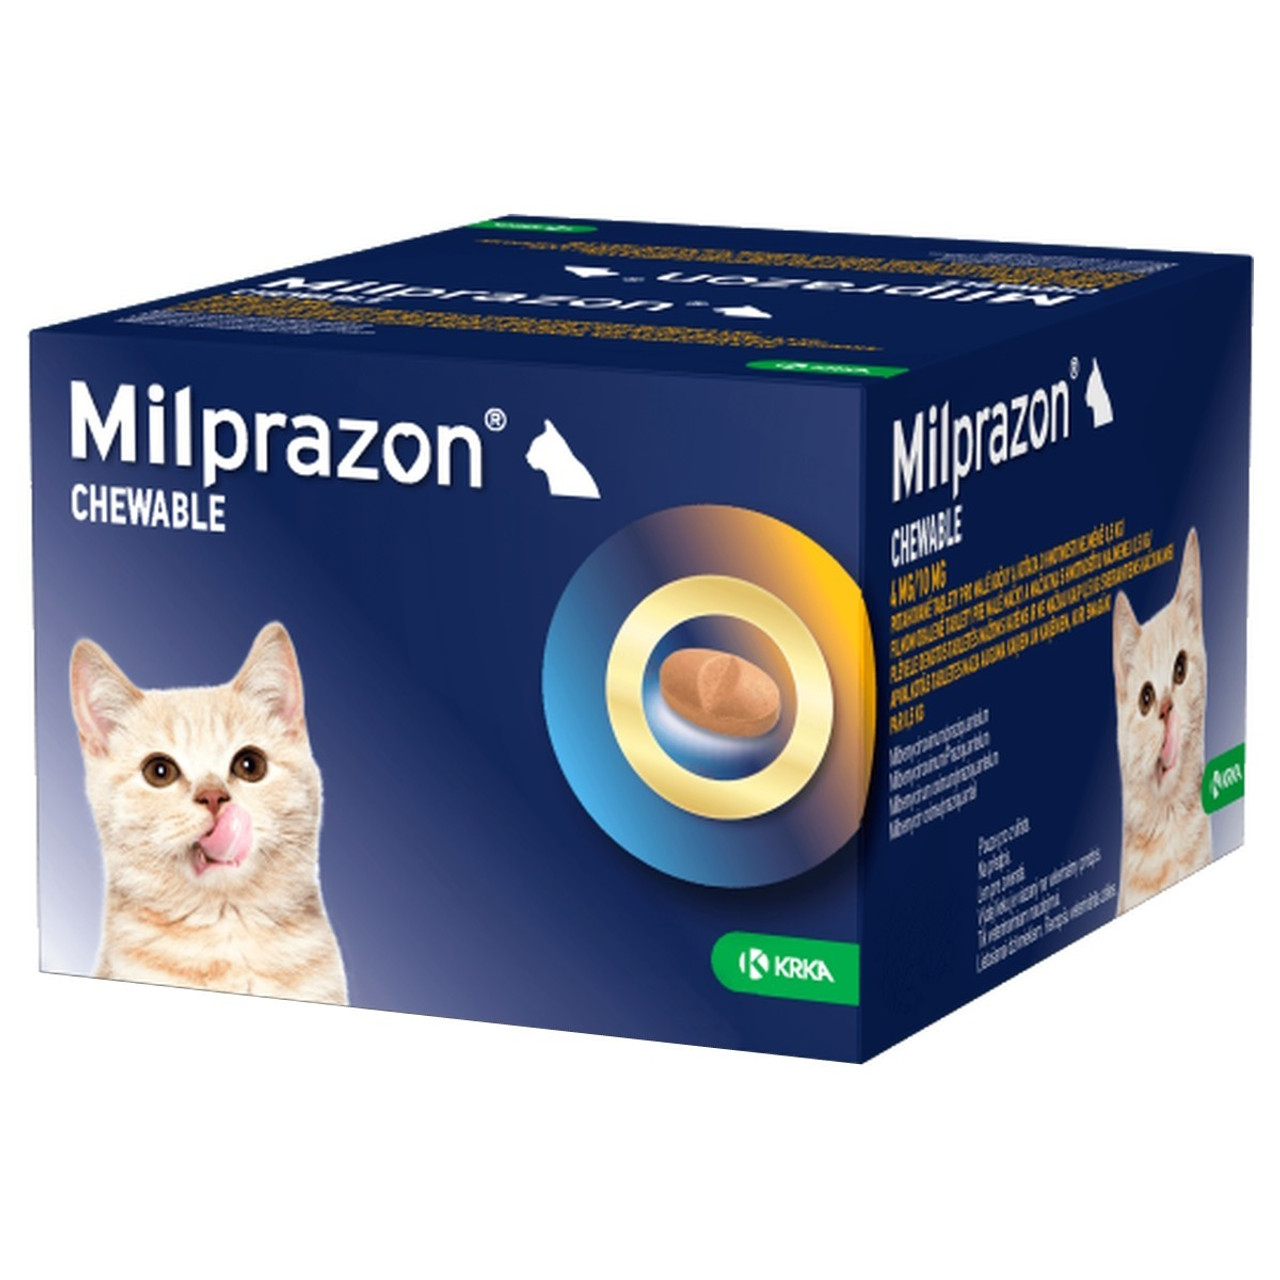 20% di sconto su Milprazon Masticabili 4/10mg per gatti e gattini di piccola taglia da 1kg a 2kg (2.2-4.4lbs) - 48 masticabili su Atlantic Pet Products